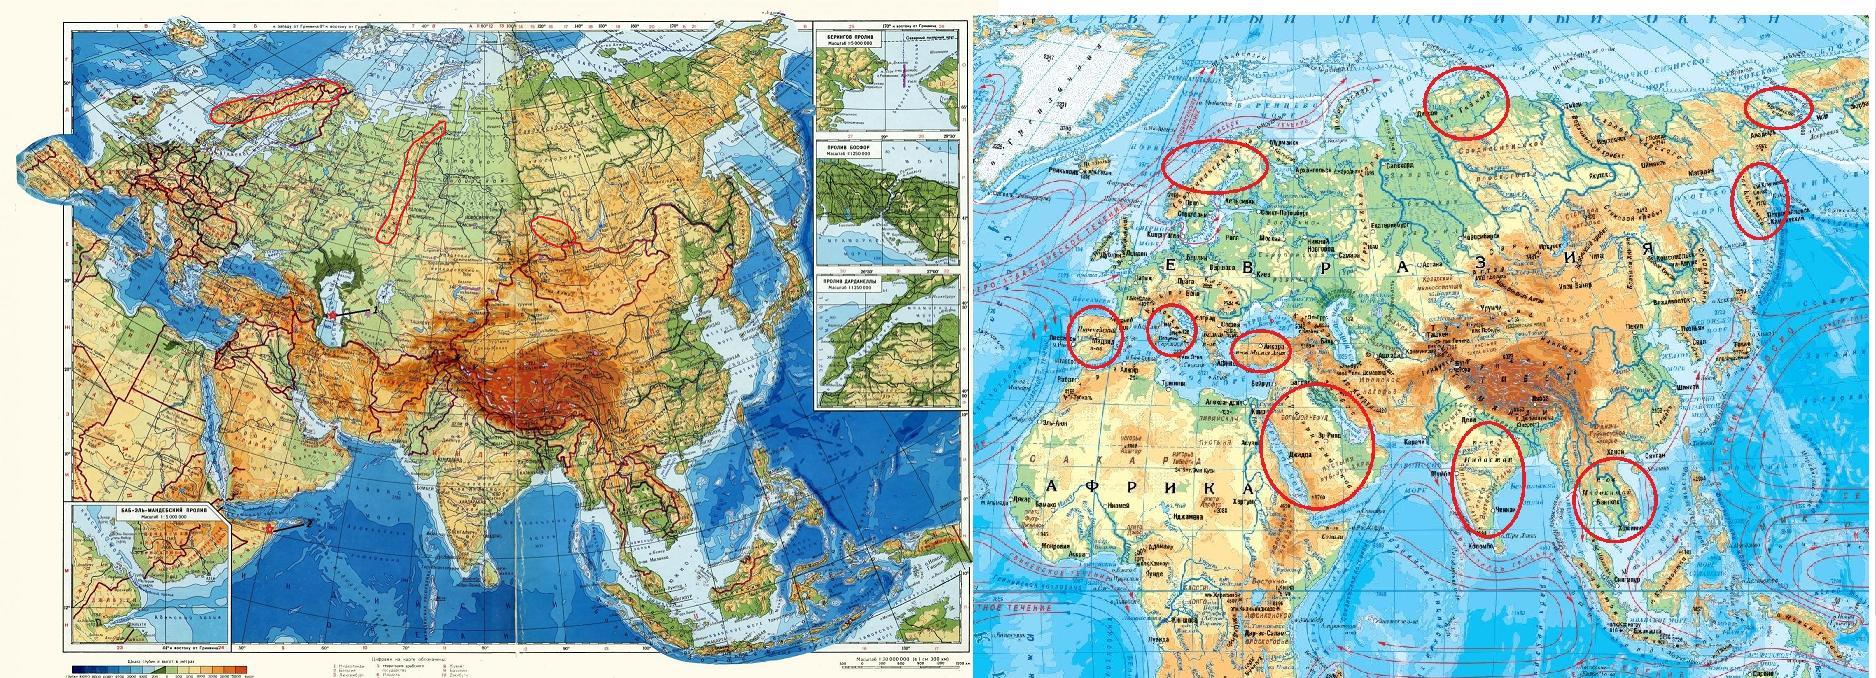 Евразия занимает. Граница Европы и Азии на карте Евразии. Какре место занимает Евразия по площади. Объединенная Евразия. Озера на территории евразии